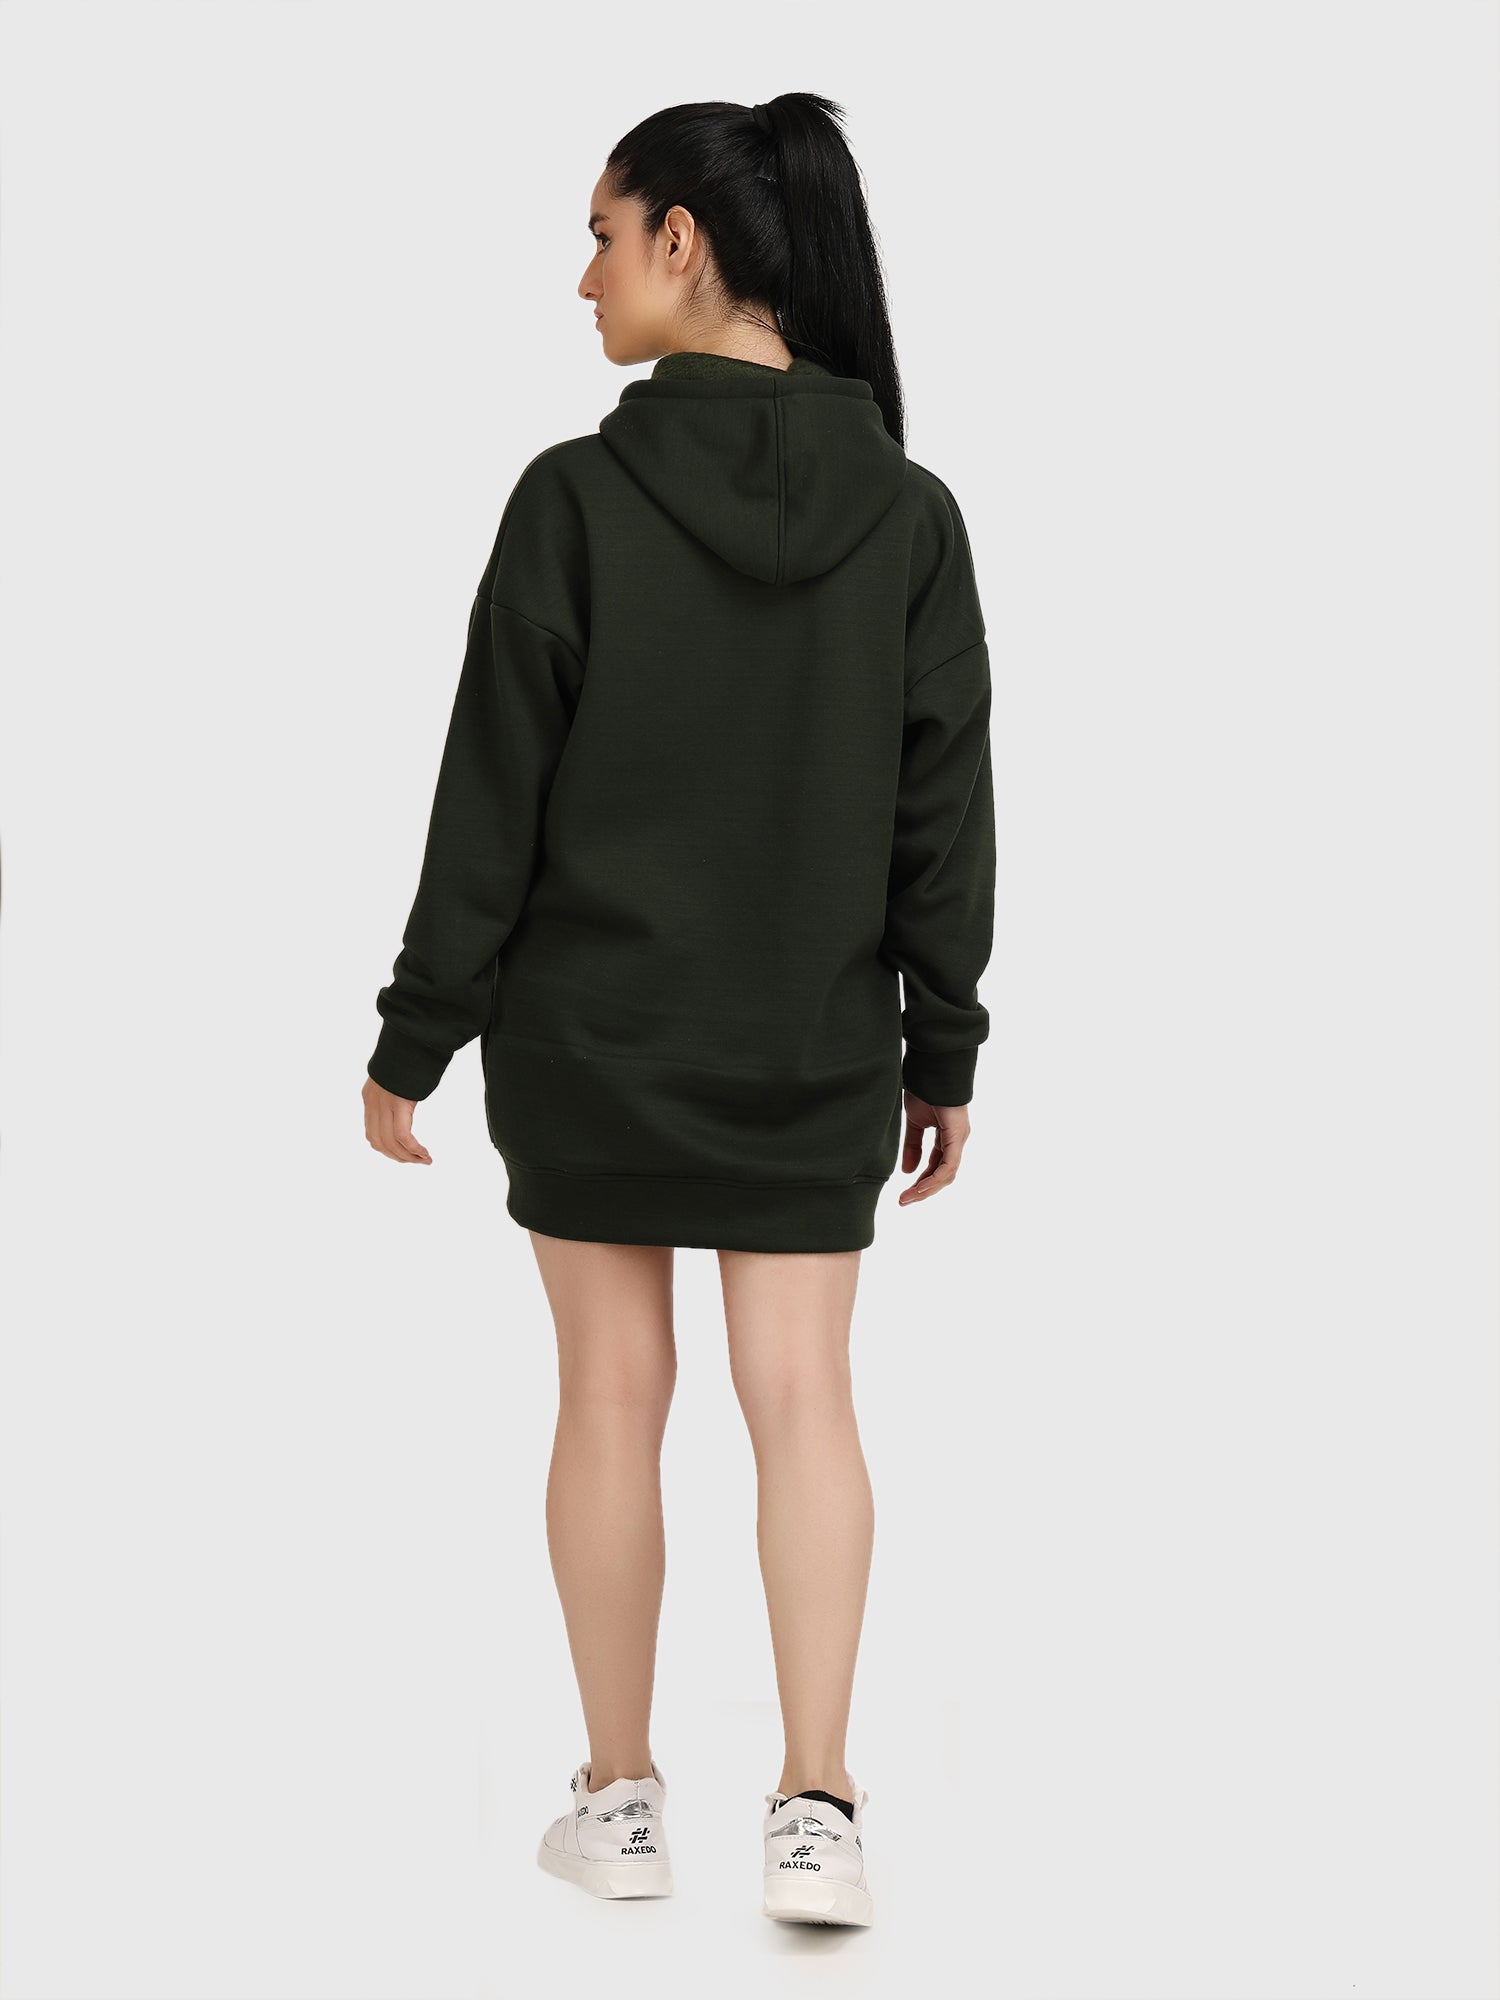 hoodie-dress